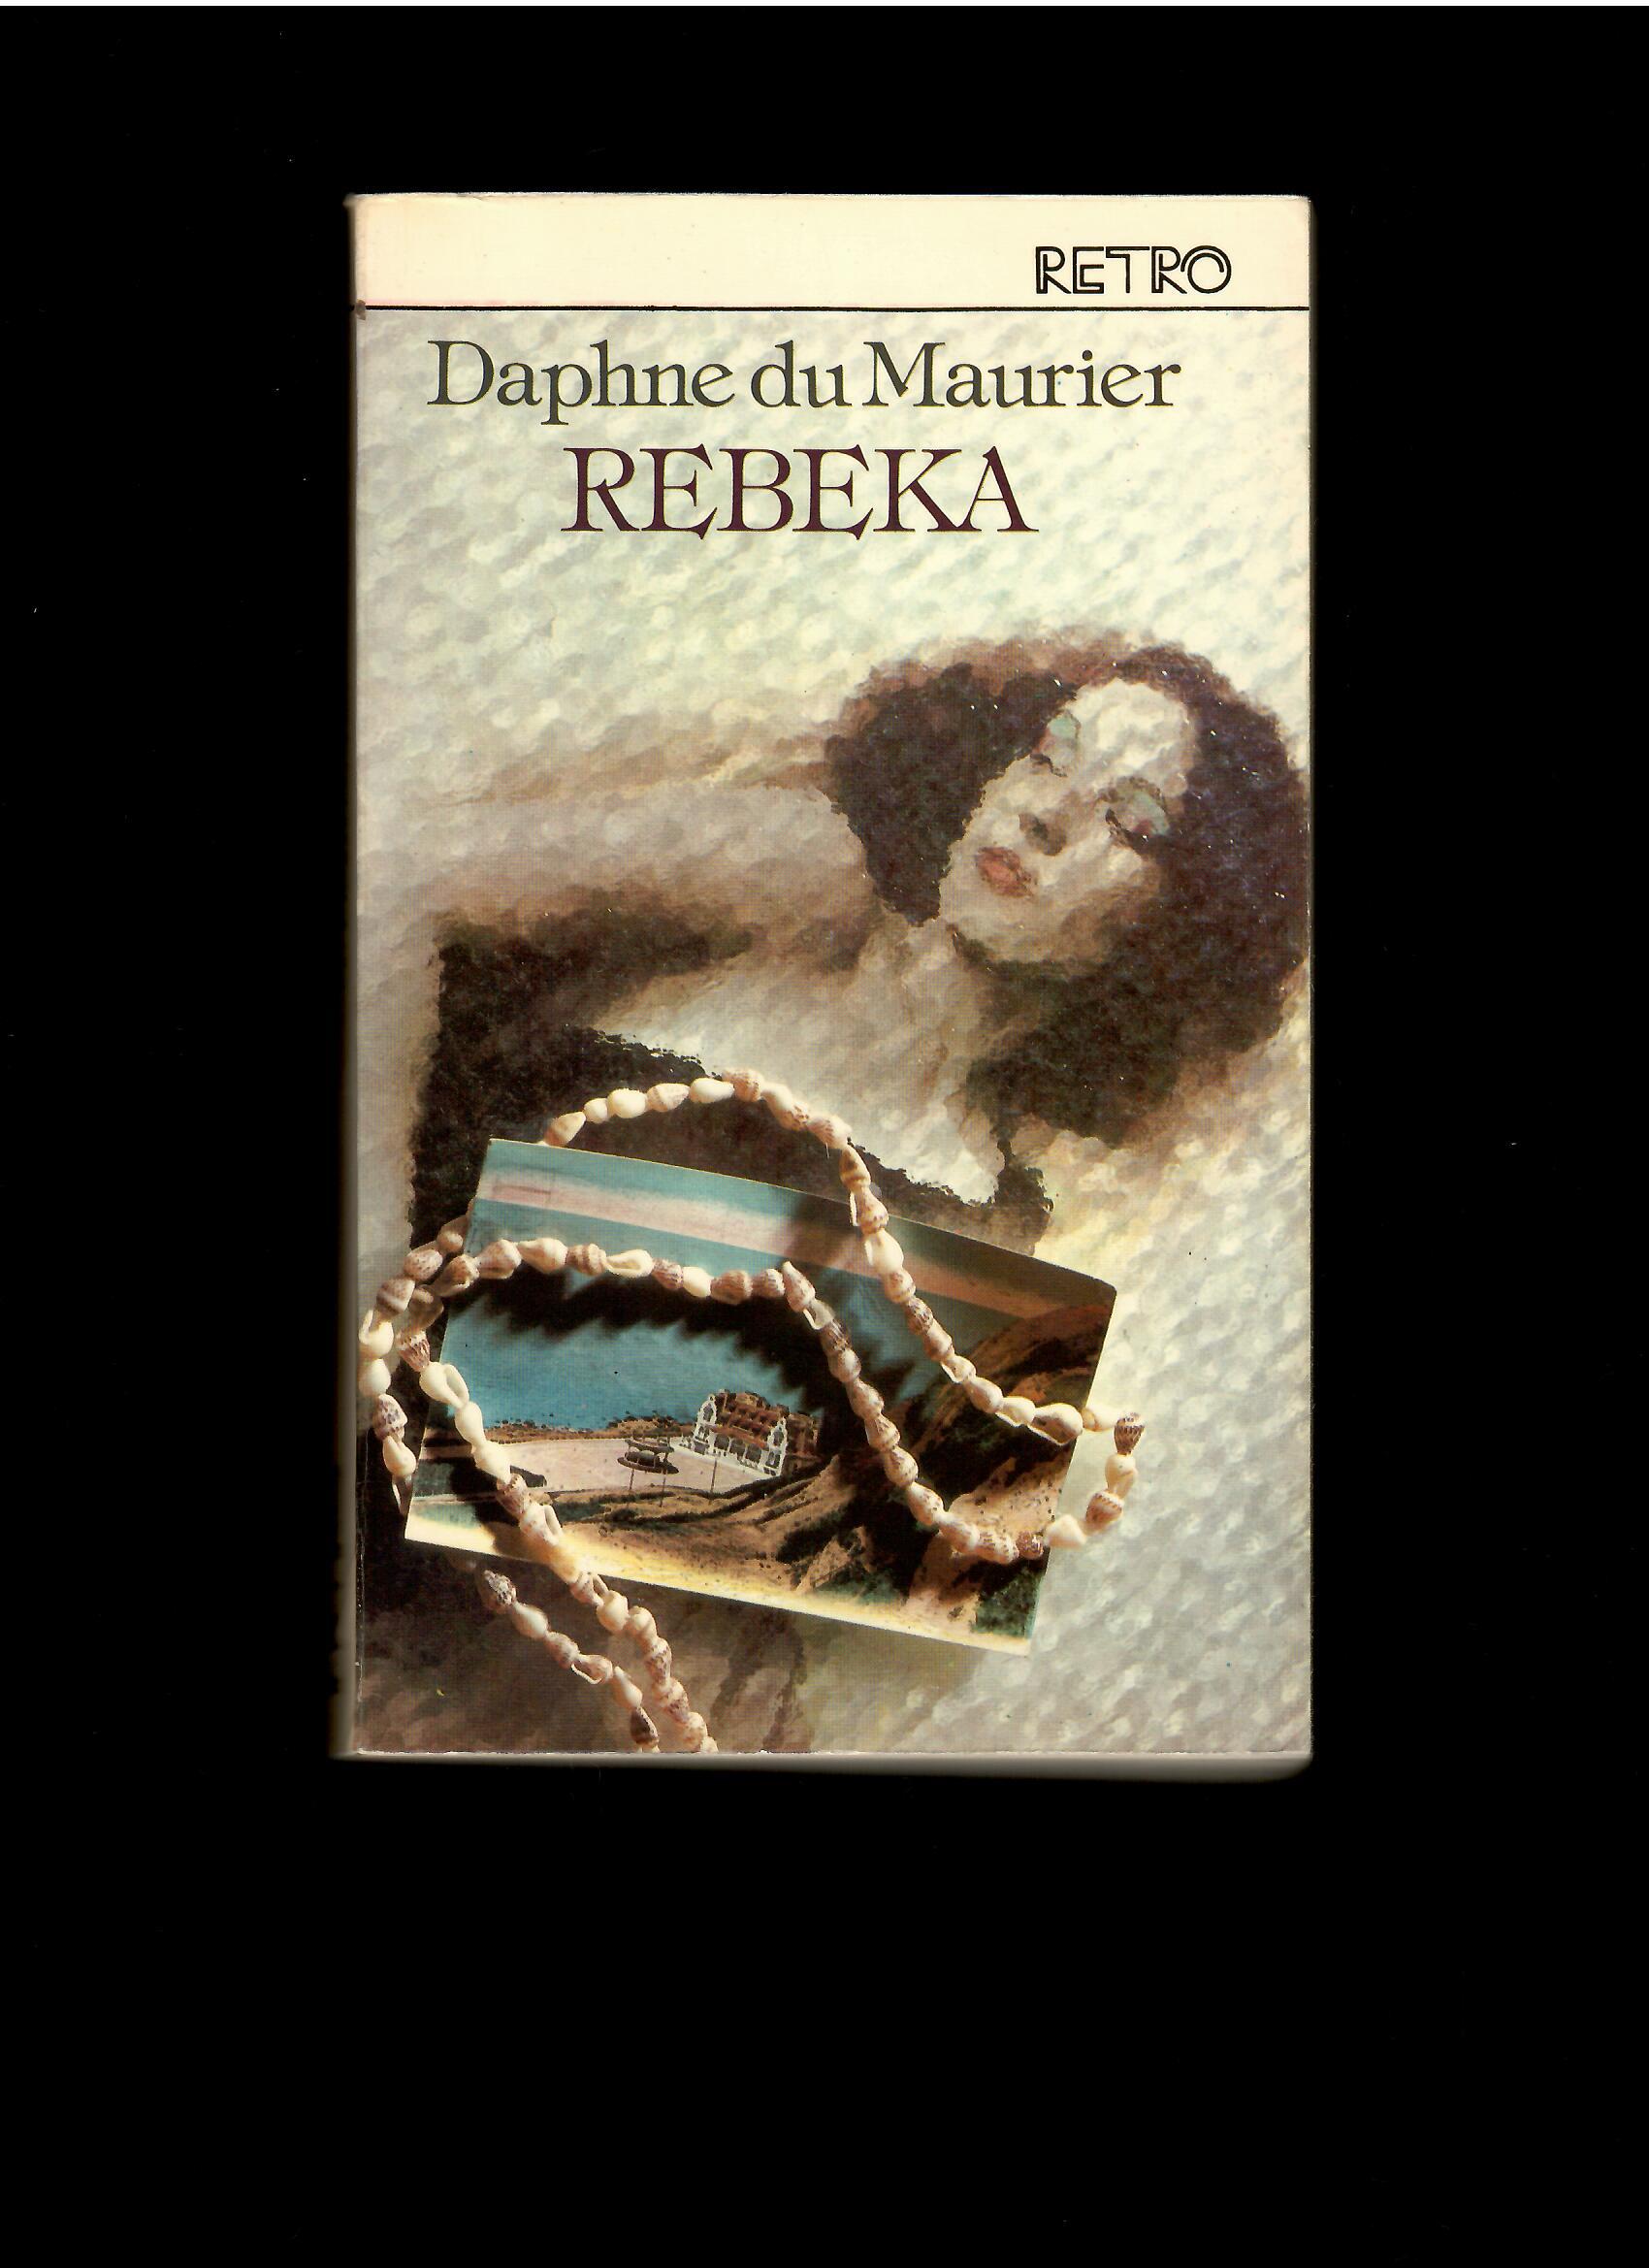 Daphne du Maurier: Rebeka